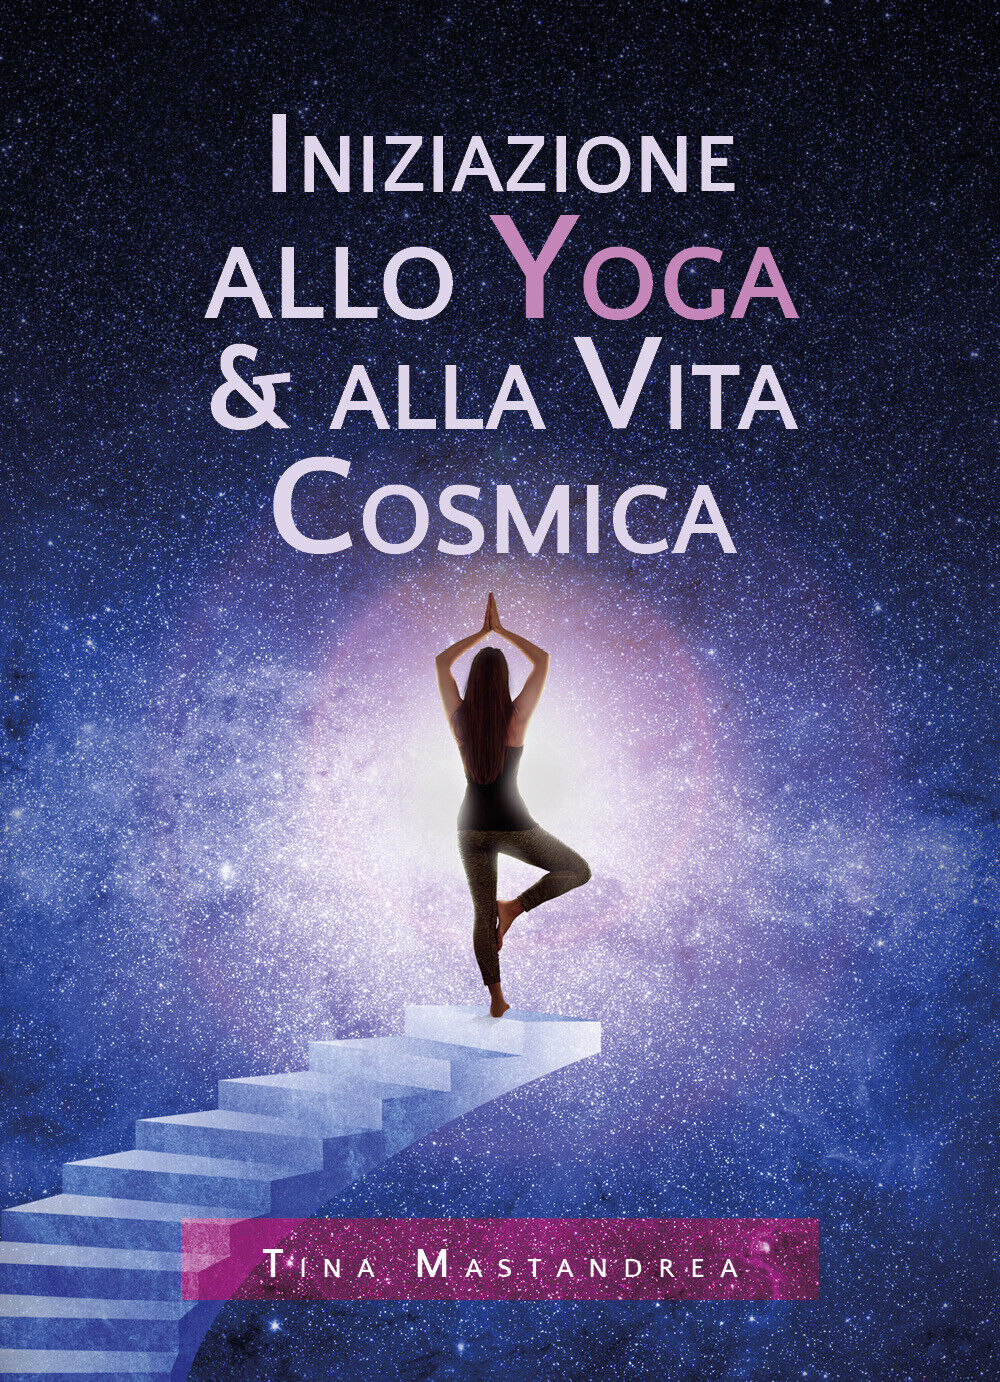 Iniziazione allo yoga & alla vita cosmica di Tina Mastandrea,  2020,  Youcanprin